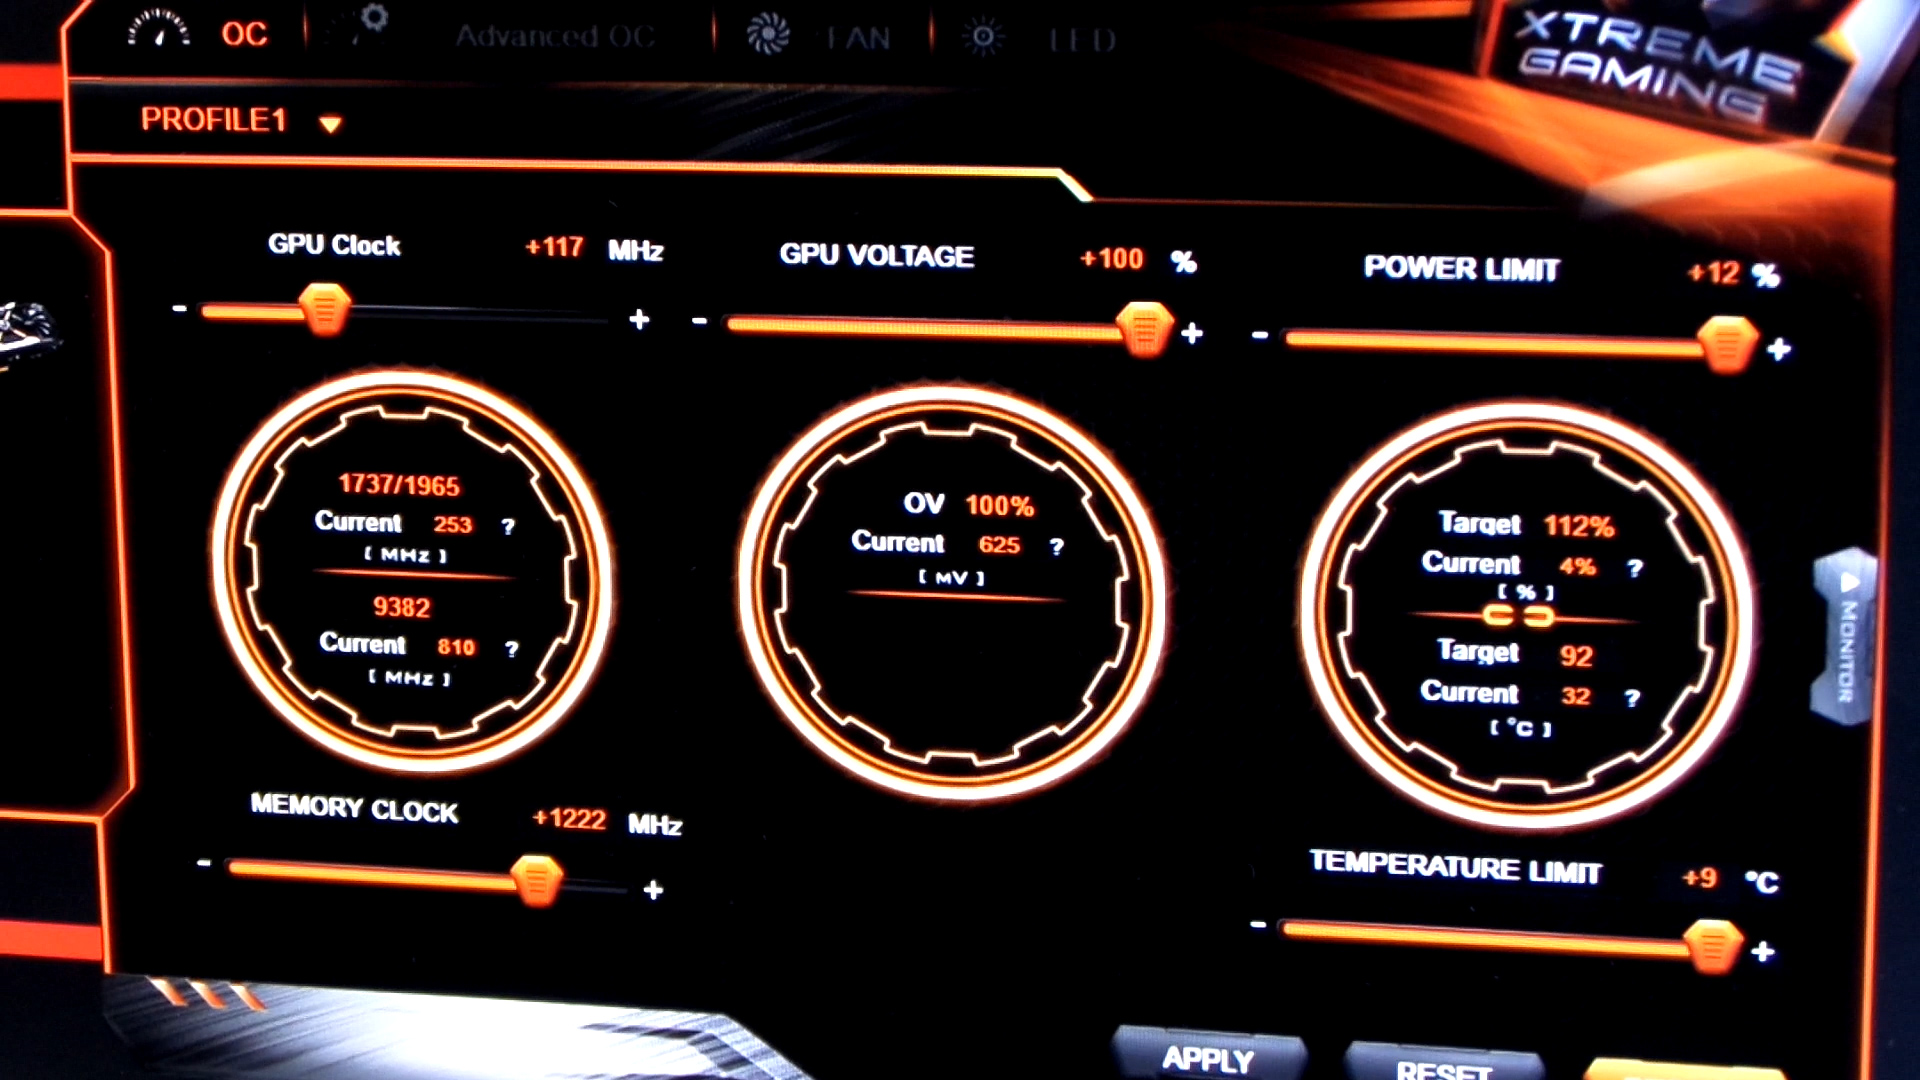 Gigabyte GTX1060 Extreme Gaming incelemesi 'Üstün Hızaşırtma üstün soğutmayla buluştu'